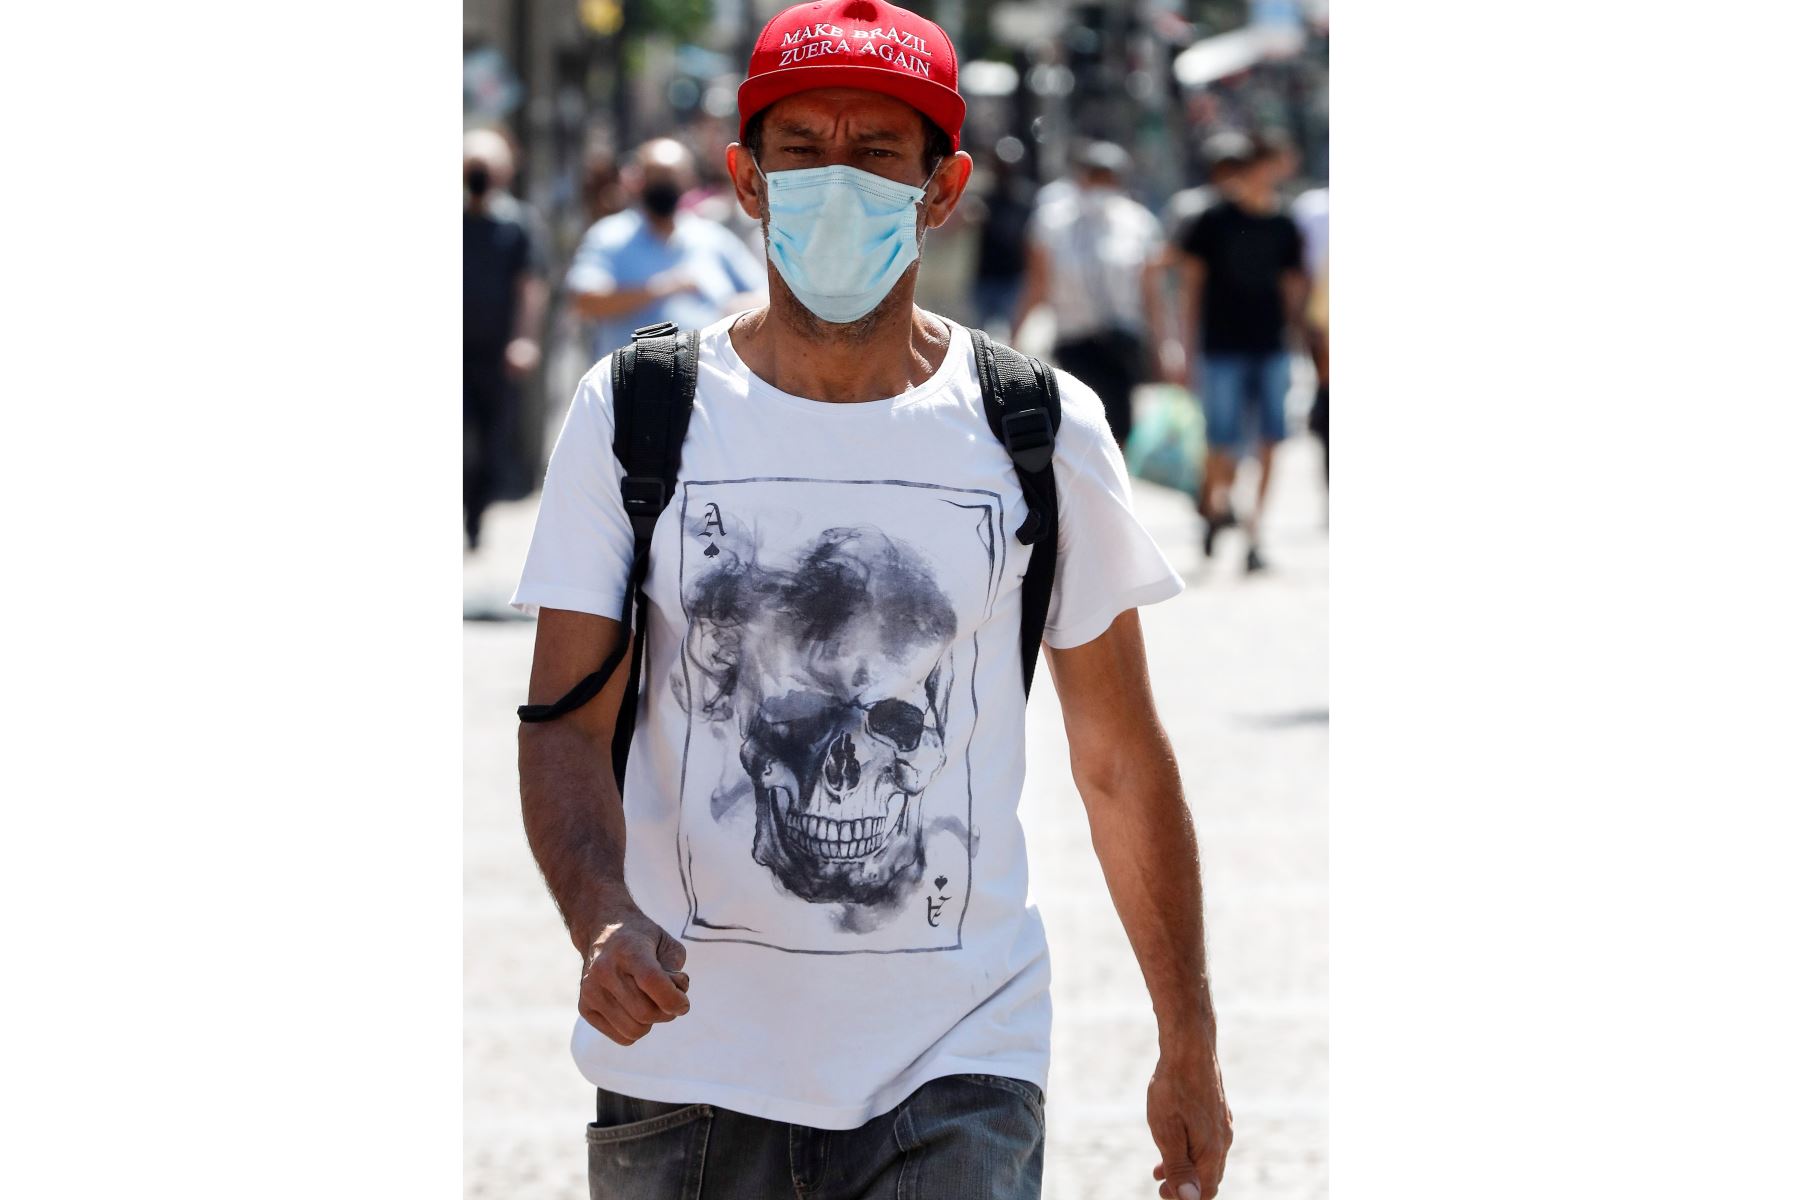 Un hombre con tapabocas camina hoy en el centro de la ciudad de Sao Paulo . Brasil registró 1.184 nuevas muertes por coronavirus el día de ayer y el total de fallecidos llegó a 123.780.
Foto: EFE